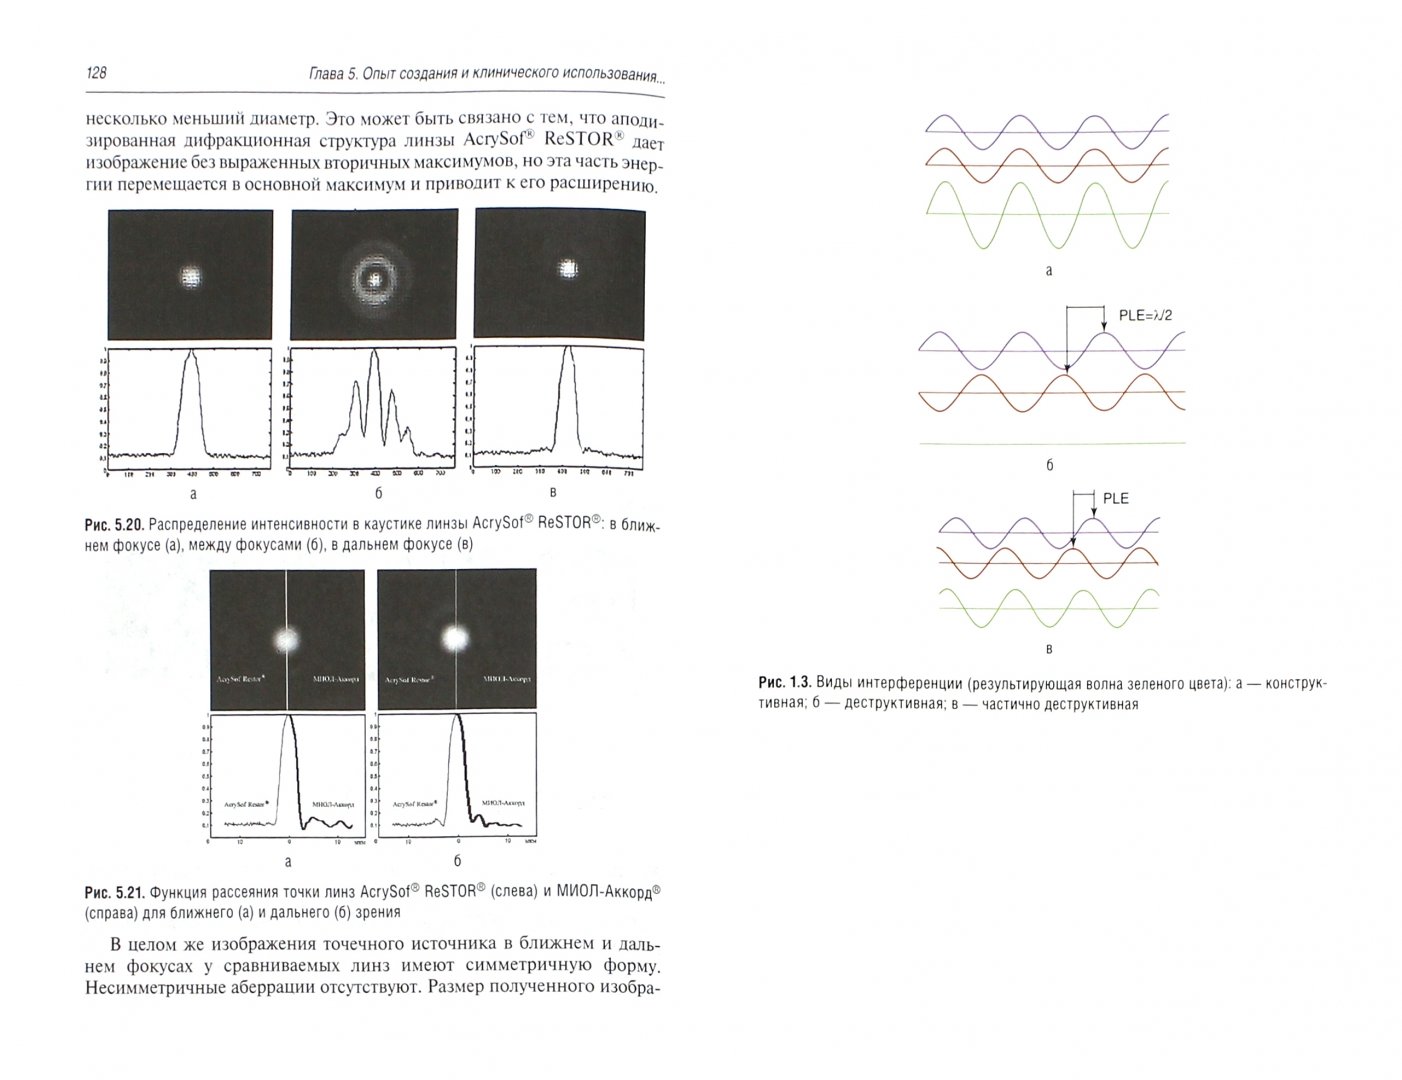 Иллюстрация 1 из 5 для Интраокулярная коррекция дифракционно-рефракционными линзами - Искаков, Тахчиди | Лабиринт - книги. Источник: Лабиринт